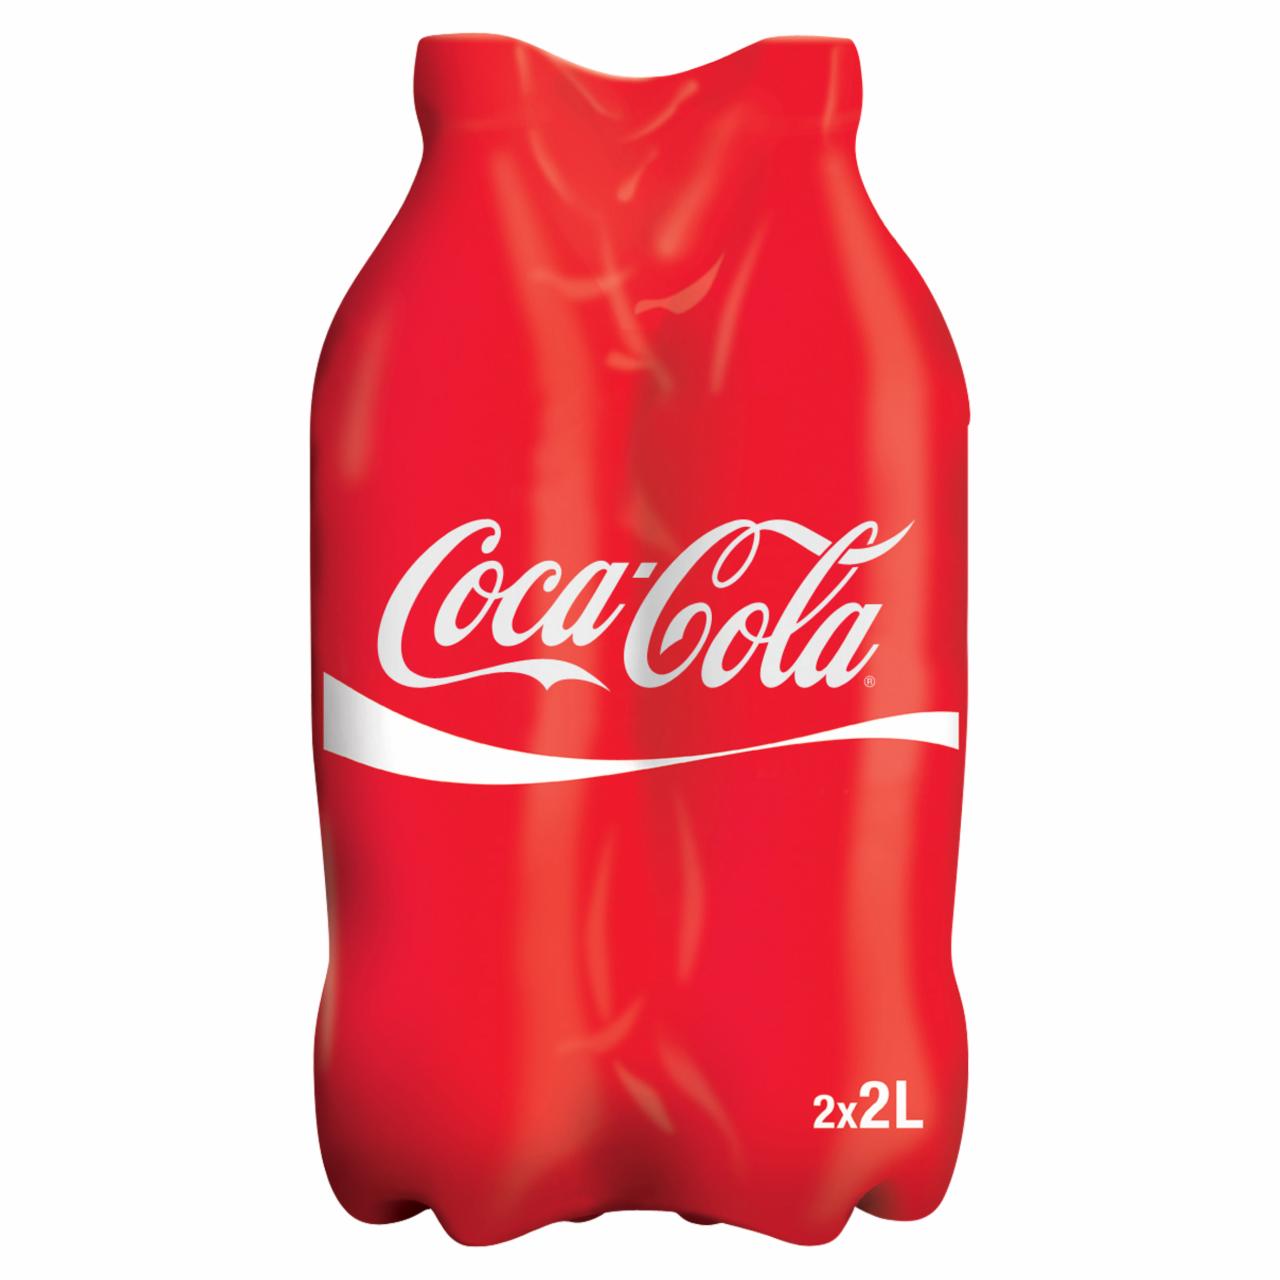 Képek - Coca-Cola colaízű szénsavas üdítőital 2 x 2 l